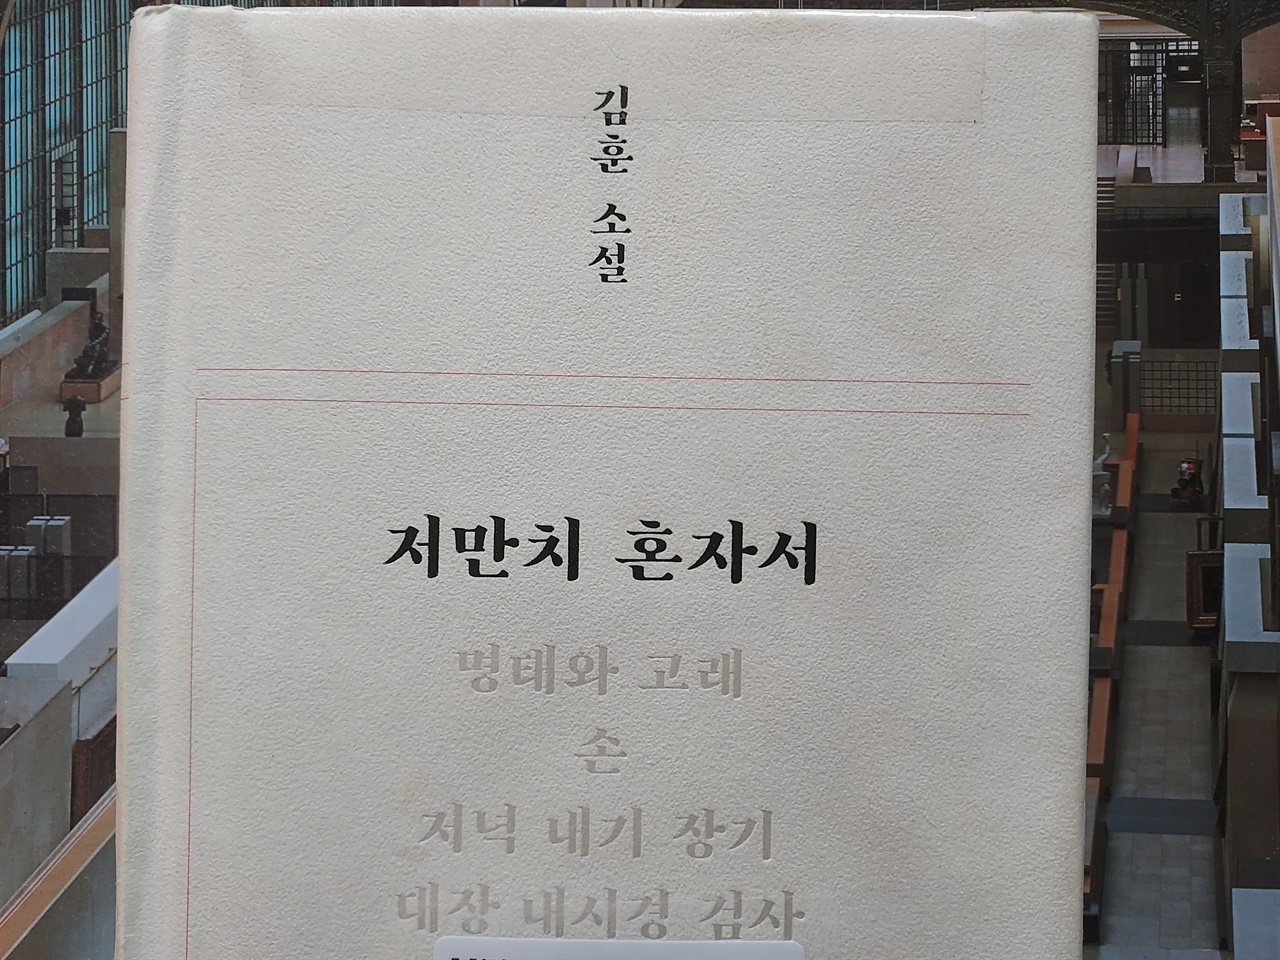 김훈의 소설집 <저만치 혼자서> 책 표지